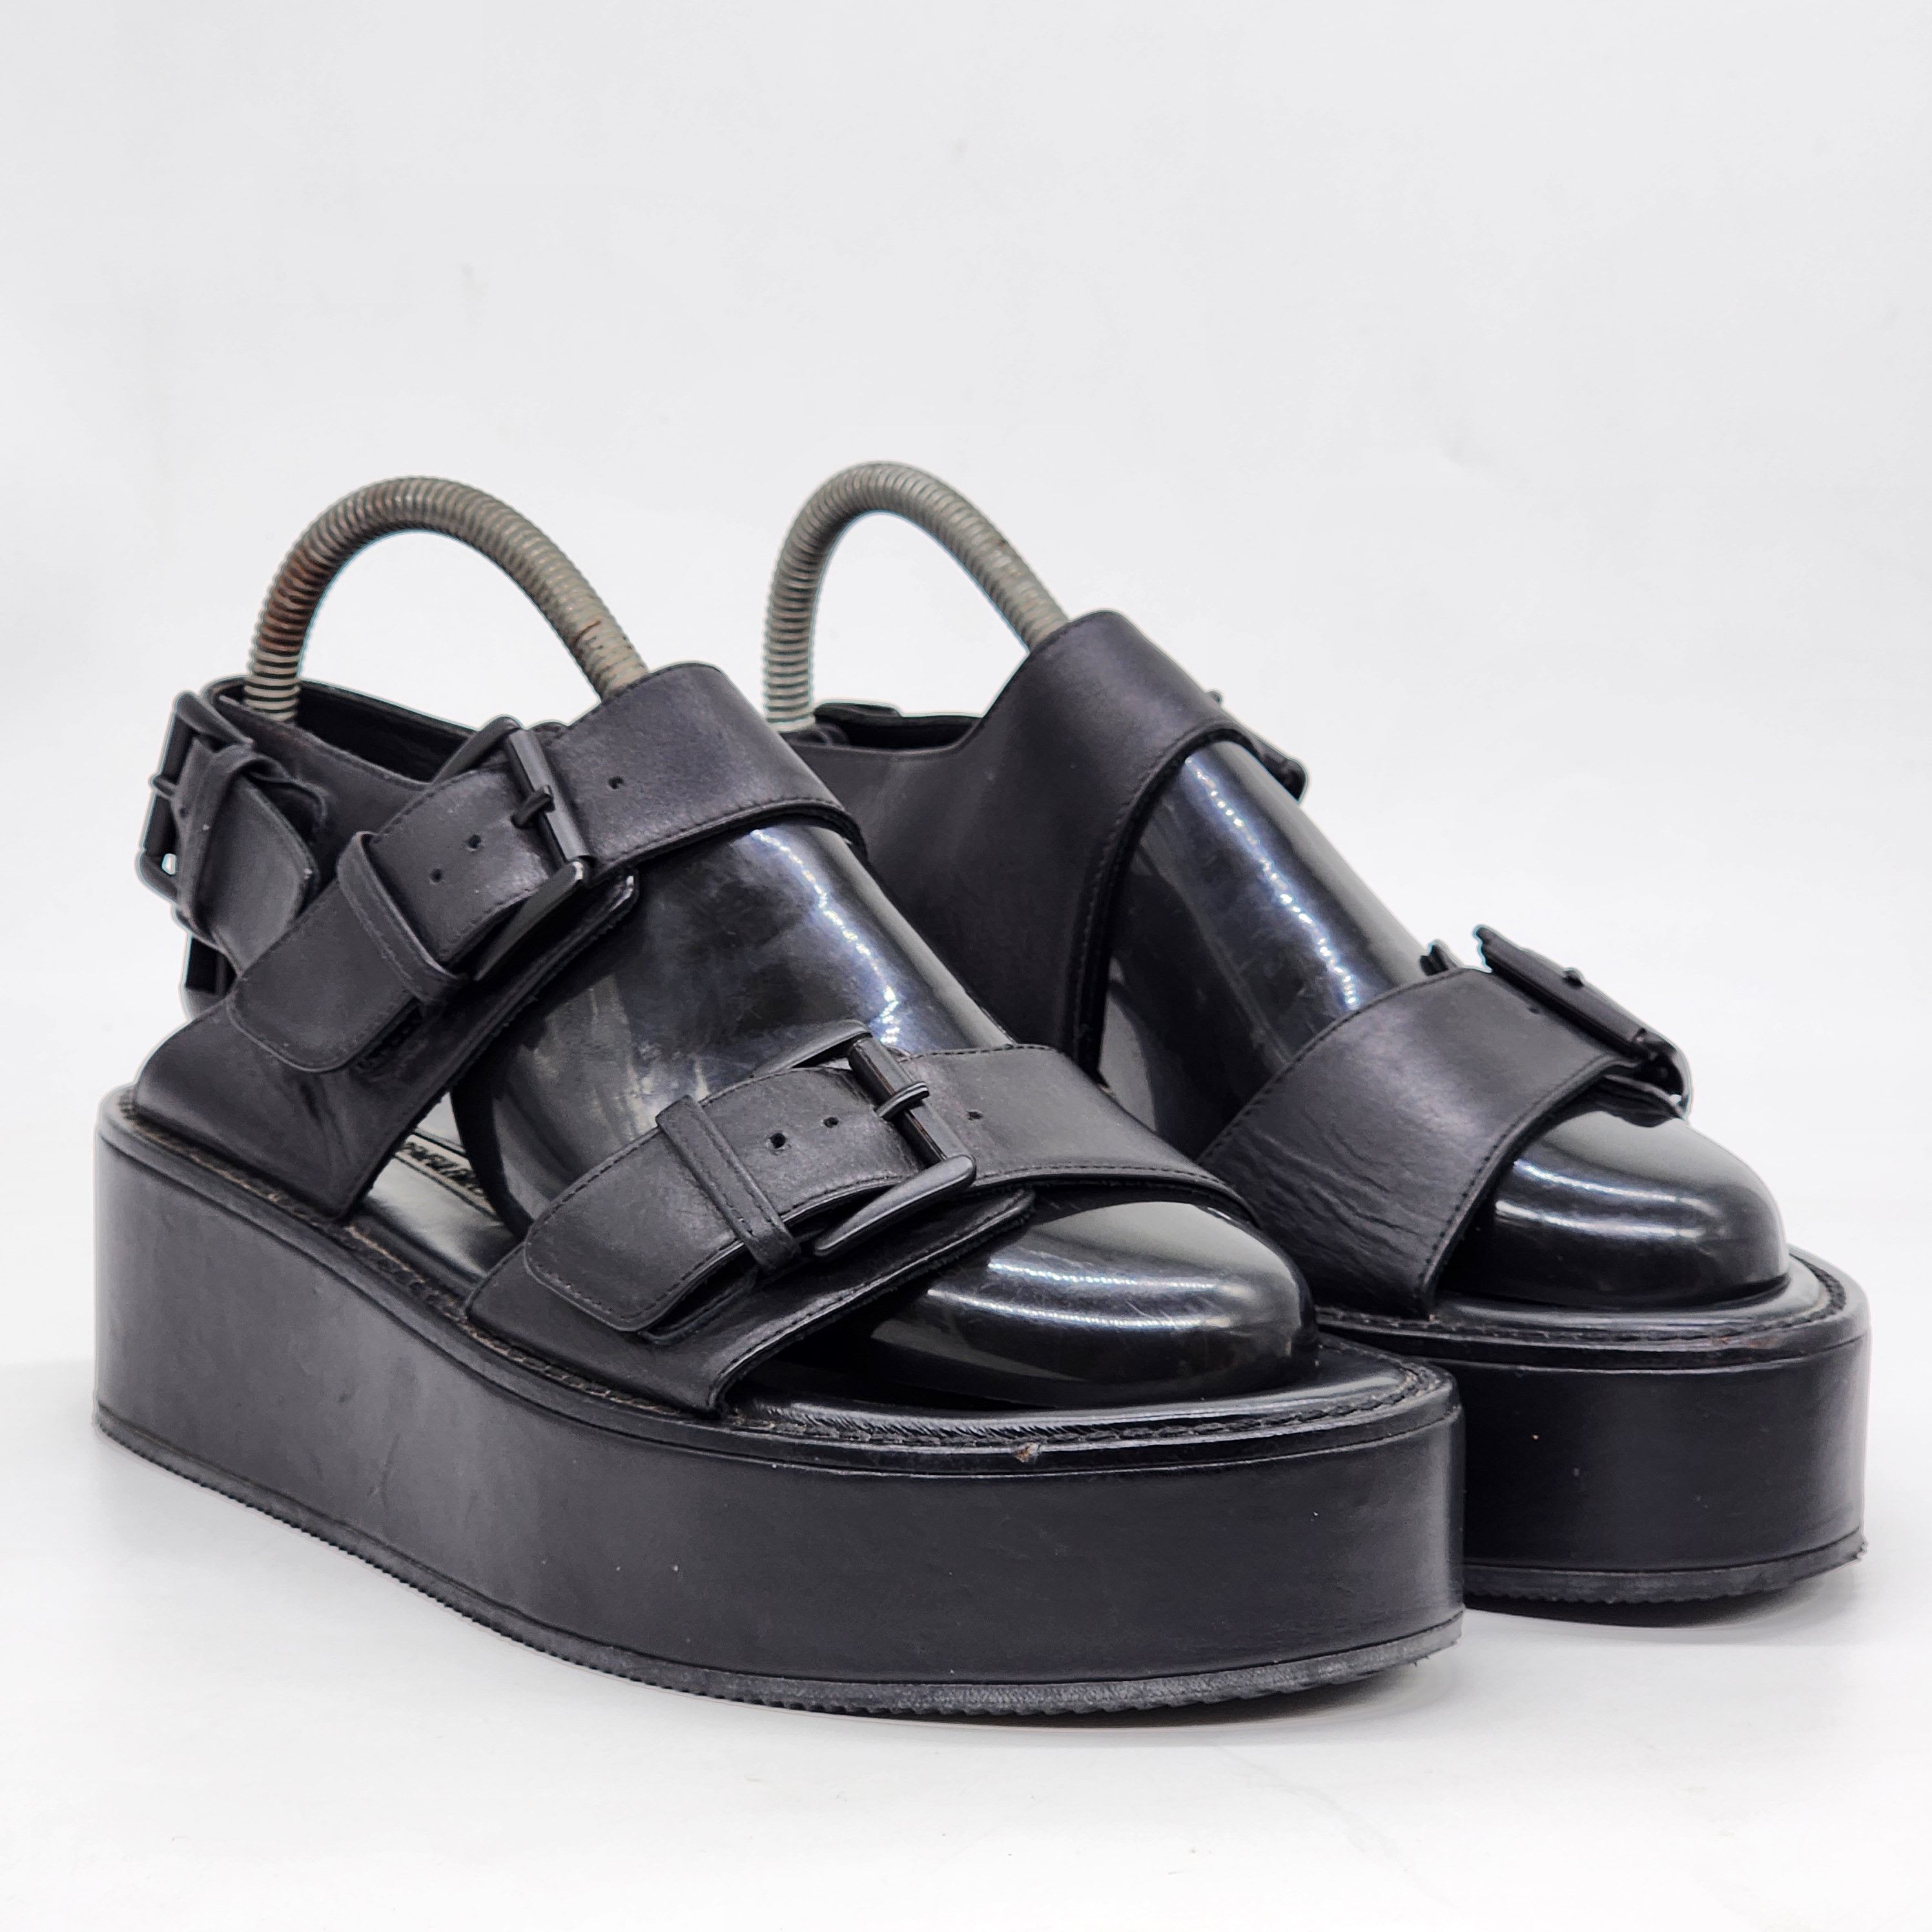 Ann Demeulemeester - Platform Sandals - 1